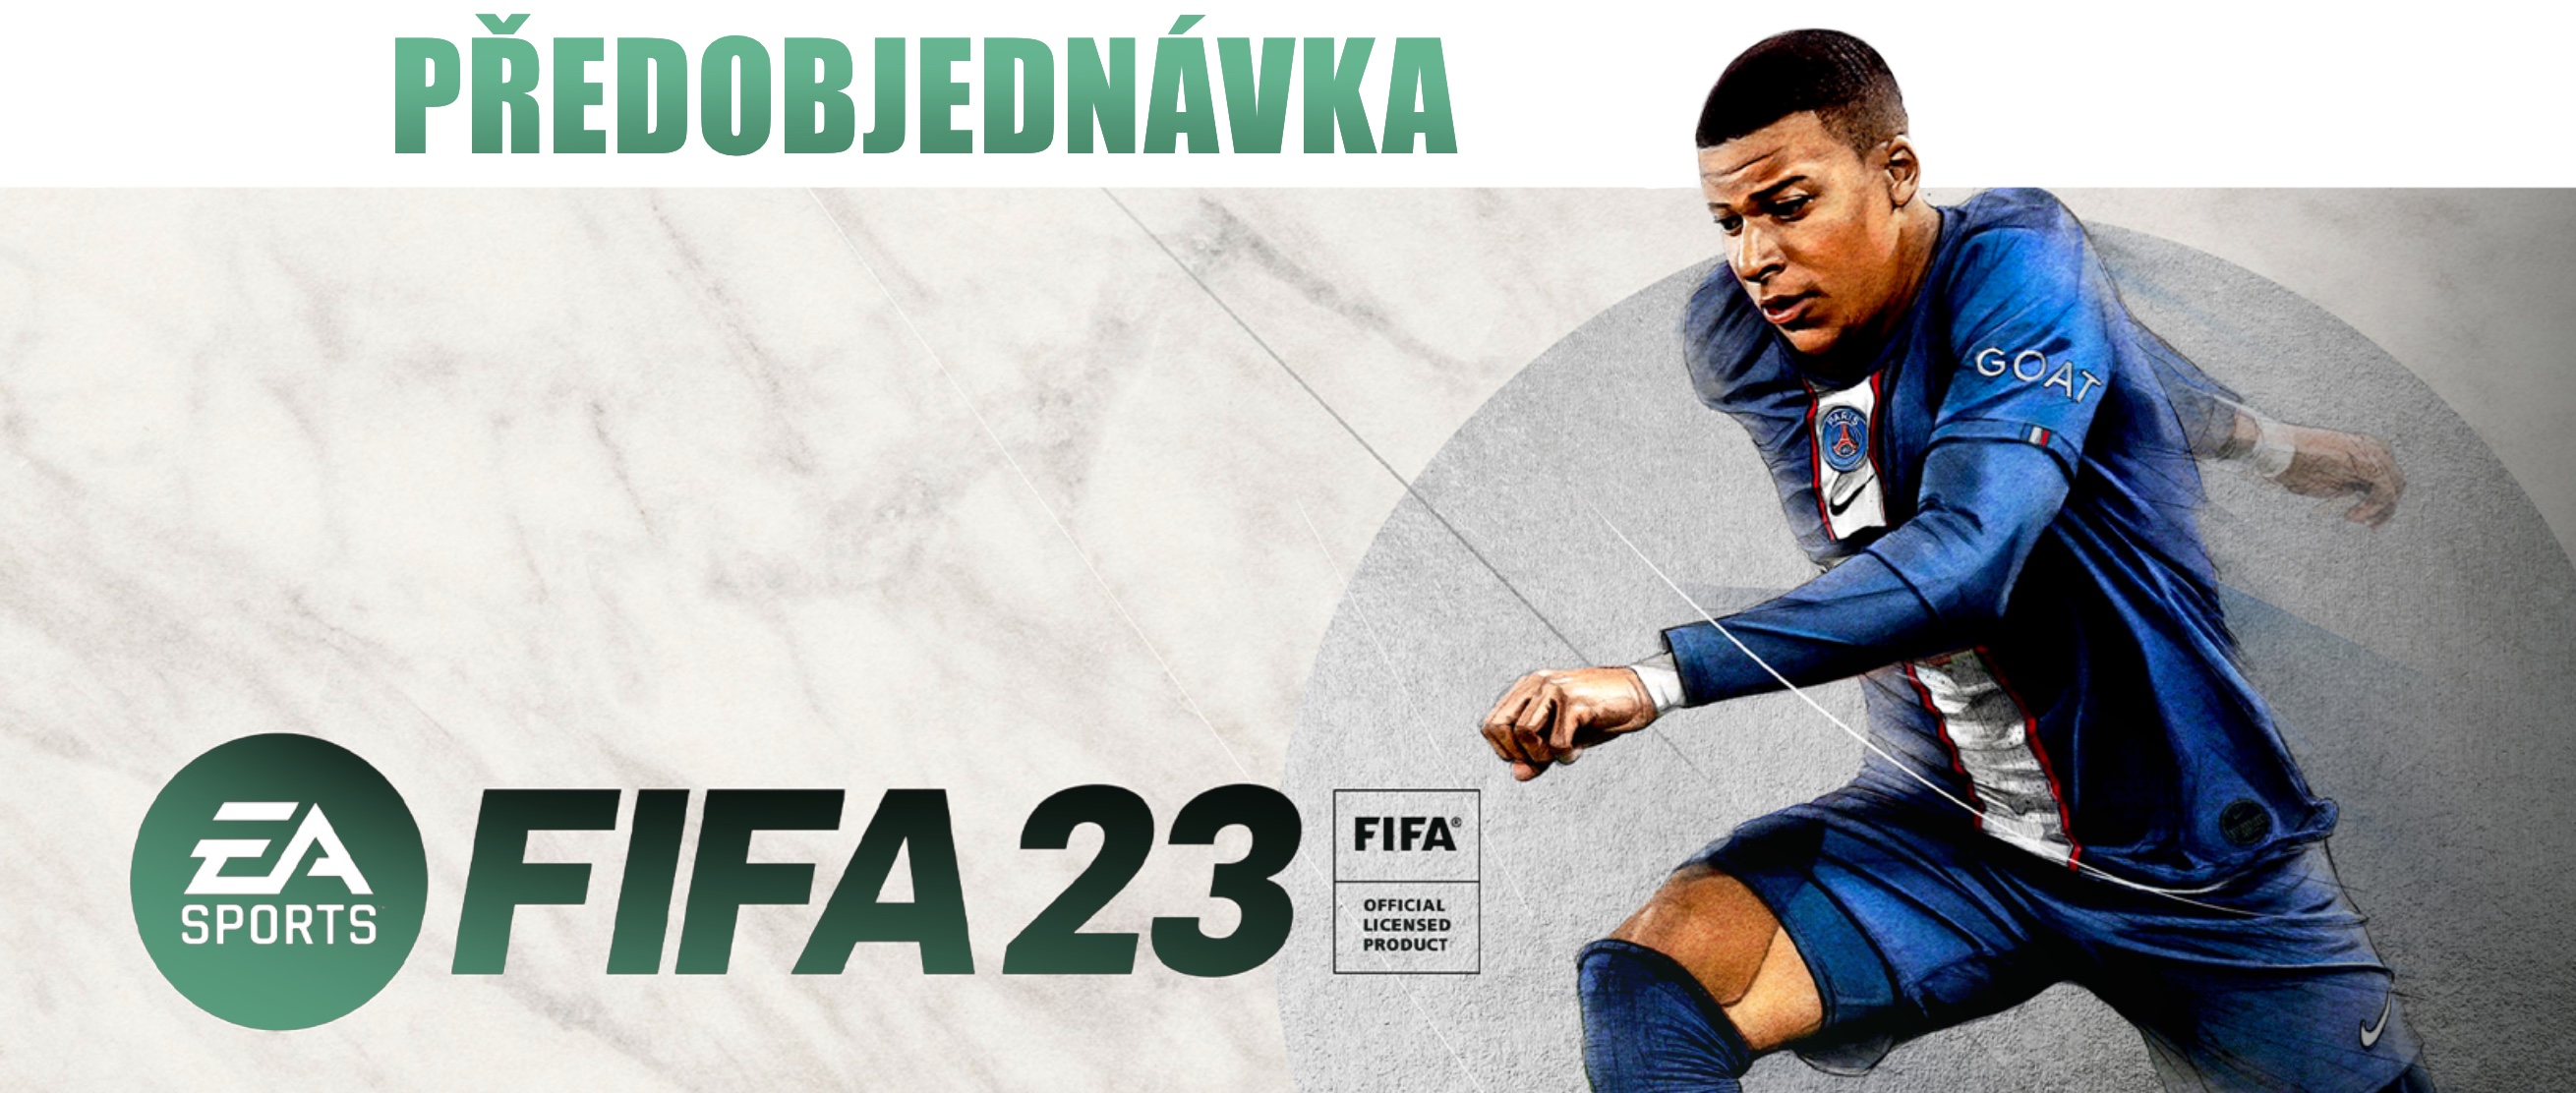 FIFA 23 - předobjednávka